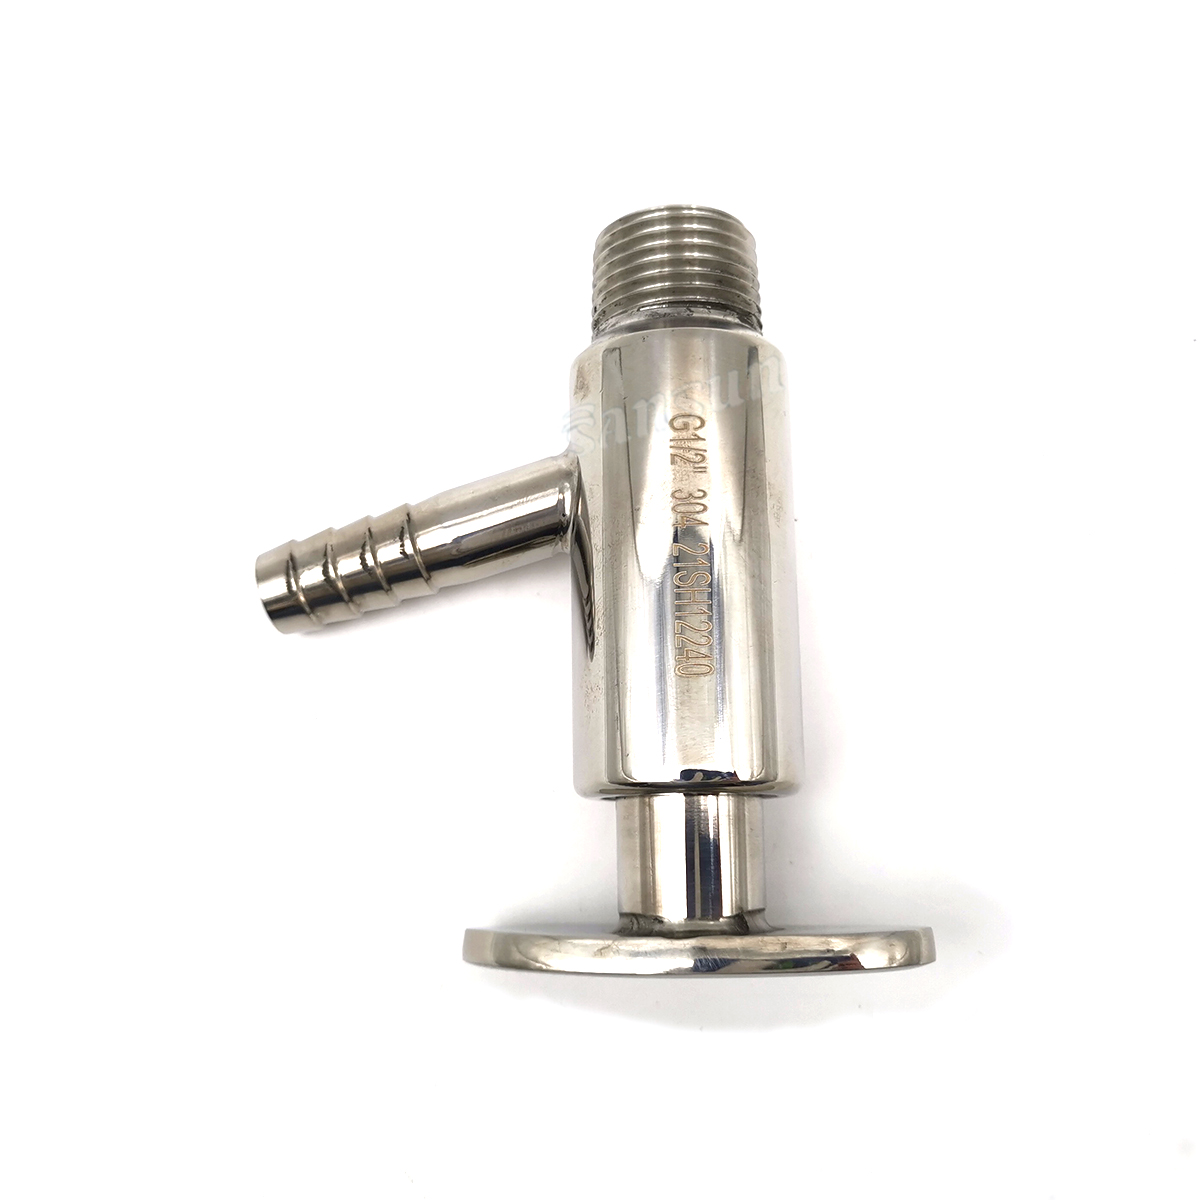 1/2" válvula de amostragem macho rosca BSP sanitária aço inoxidável